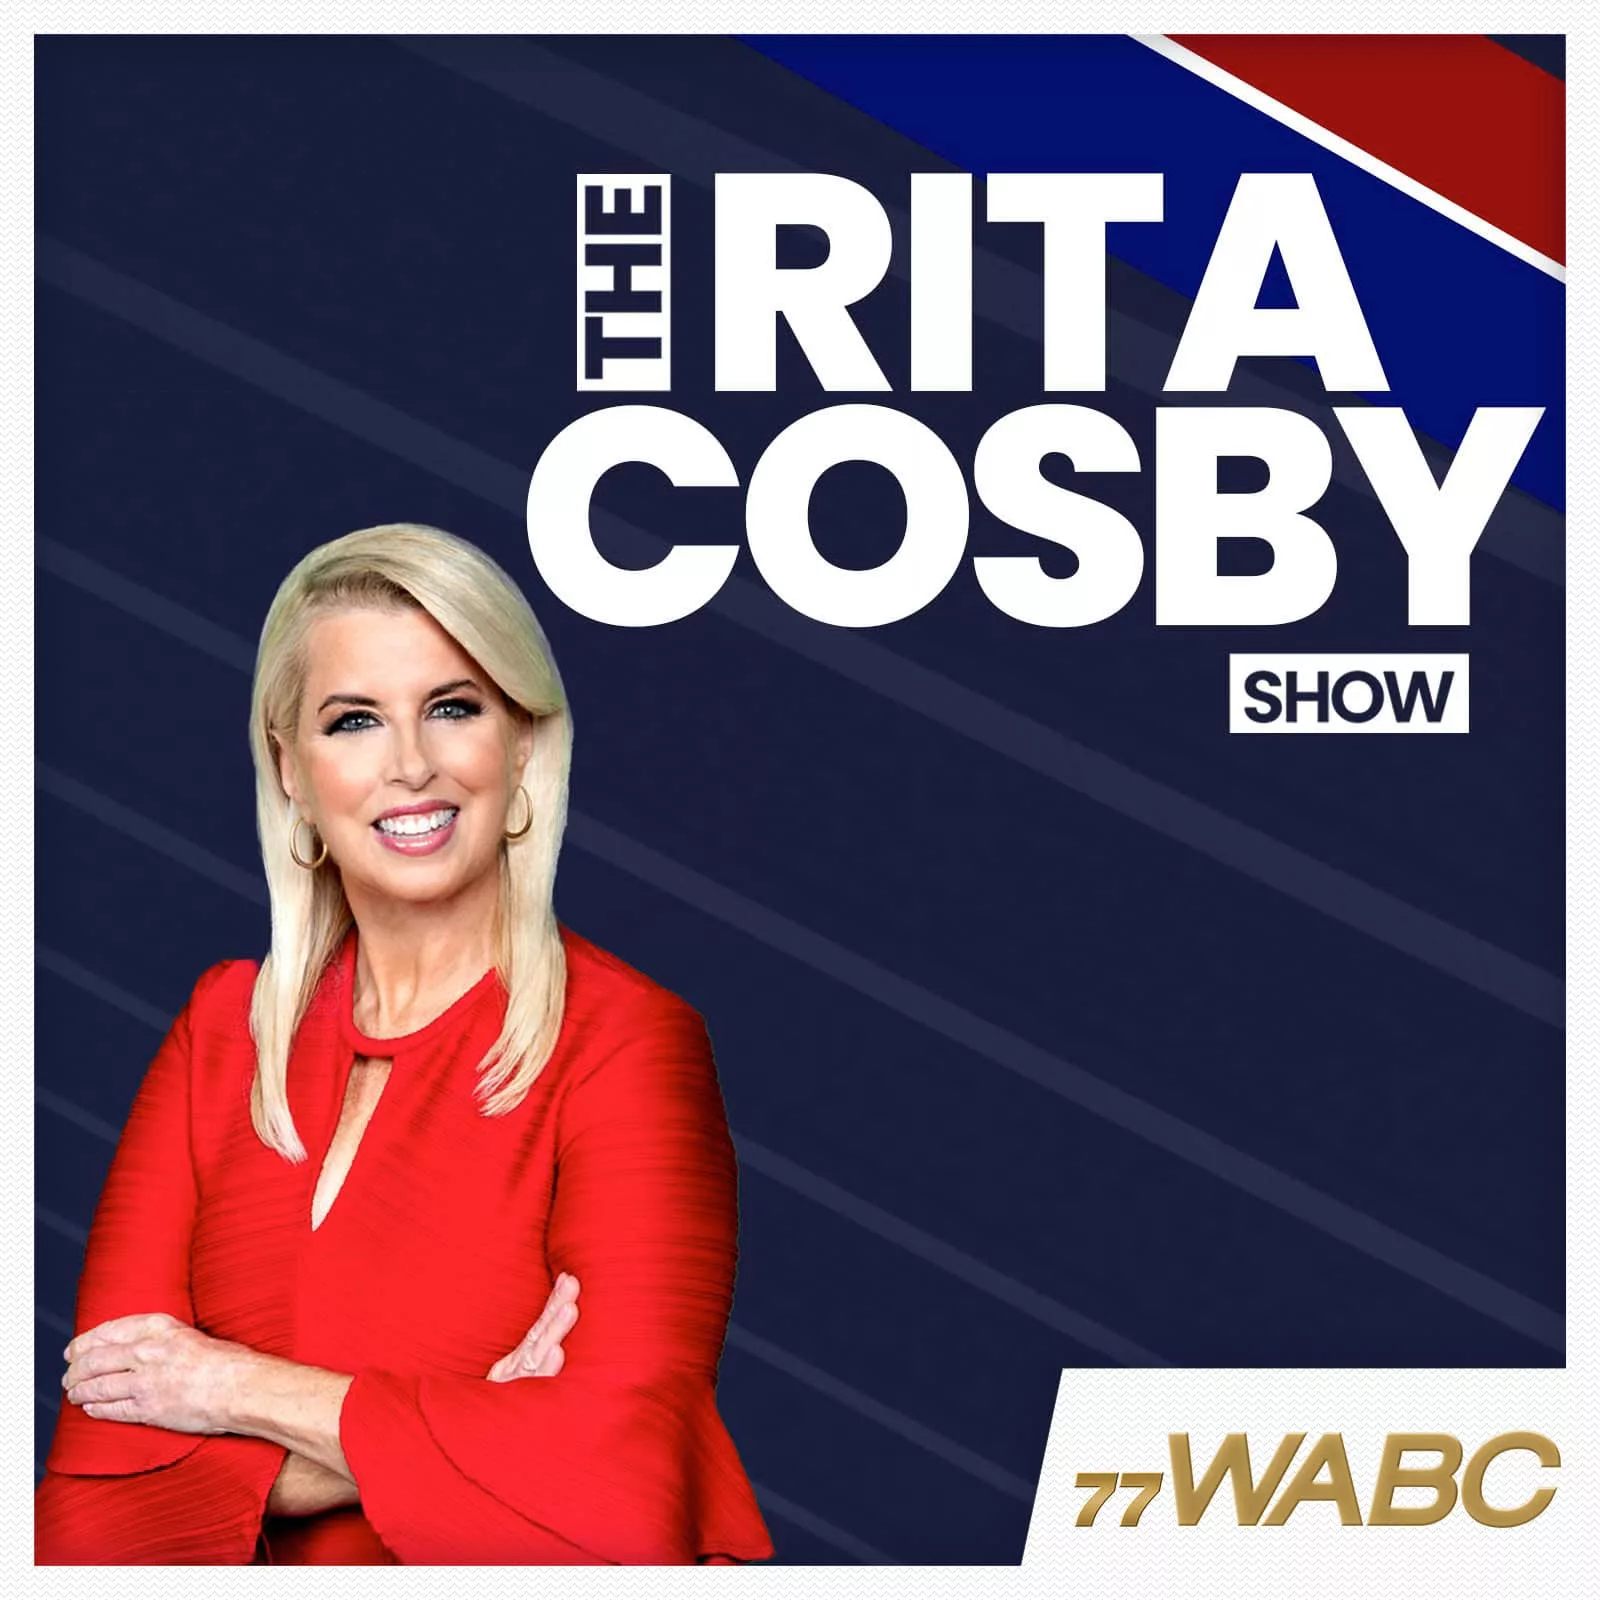 rita-cosby-podcast-new-logo749137